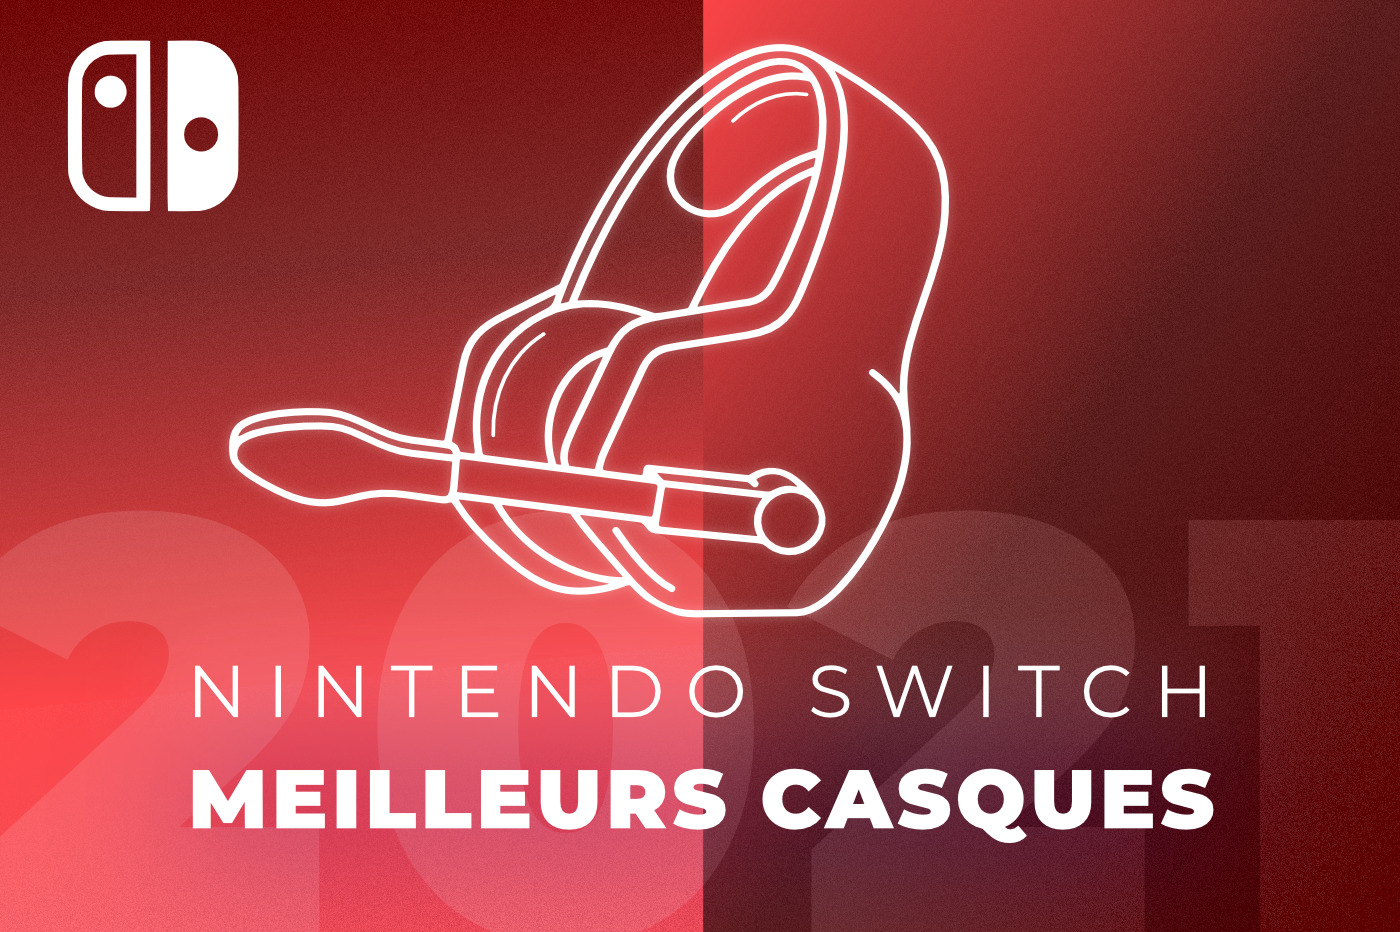 Casques gamer pour la Nintendo Switch : quels sont les meilleurs modèles ?  